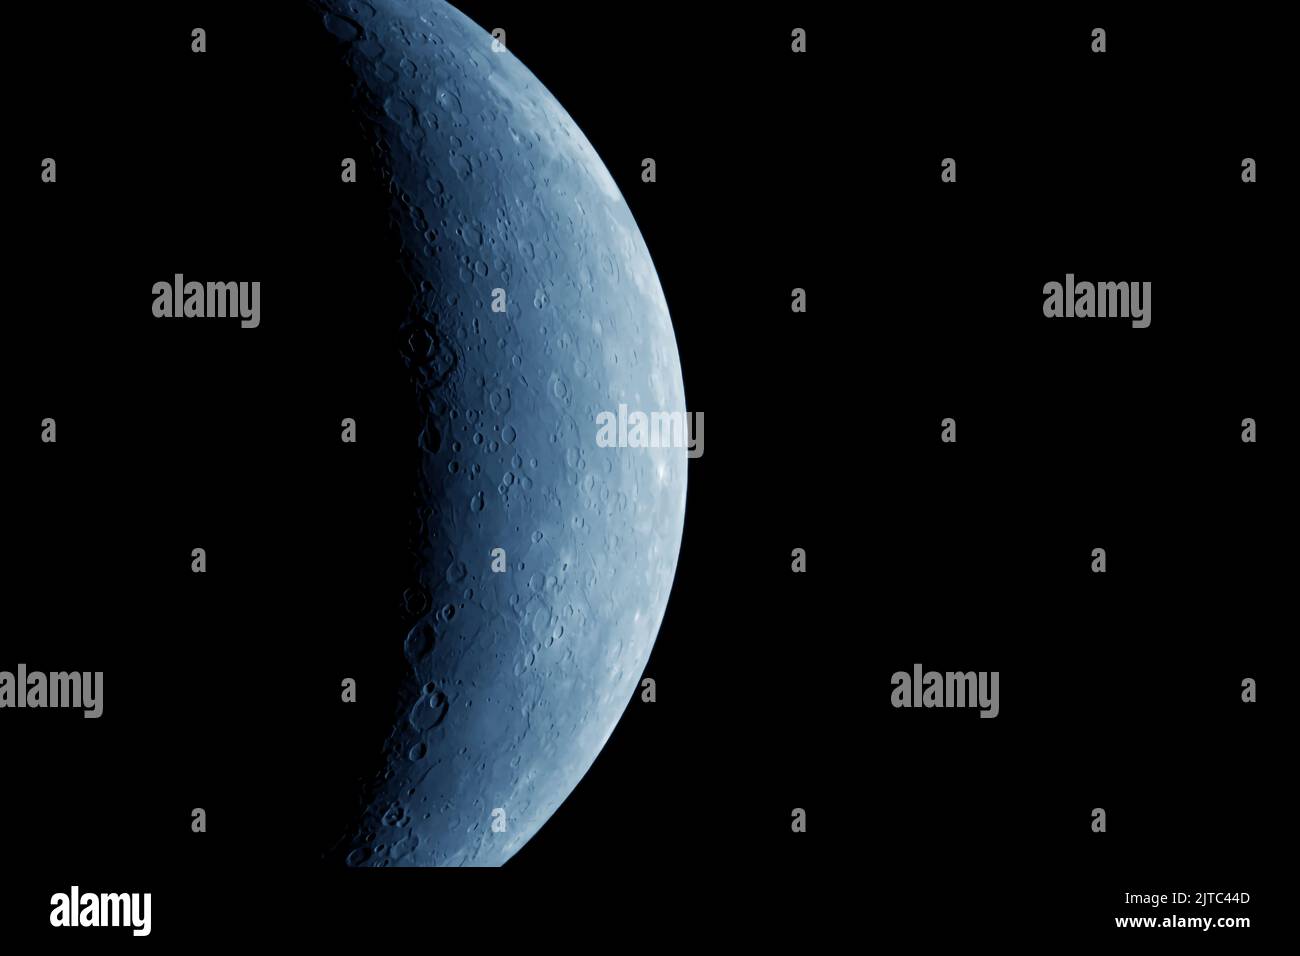 Belle lune sur fond sombre. Éléments de cette image fournis par la NASA. Photo de haute qualité Banque D'Images